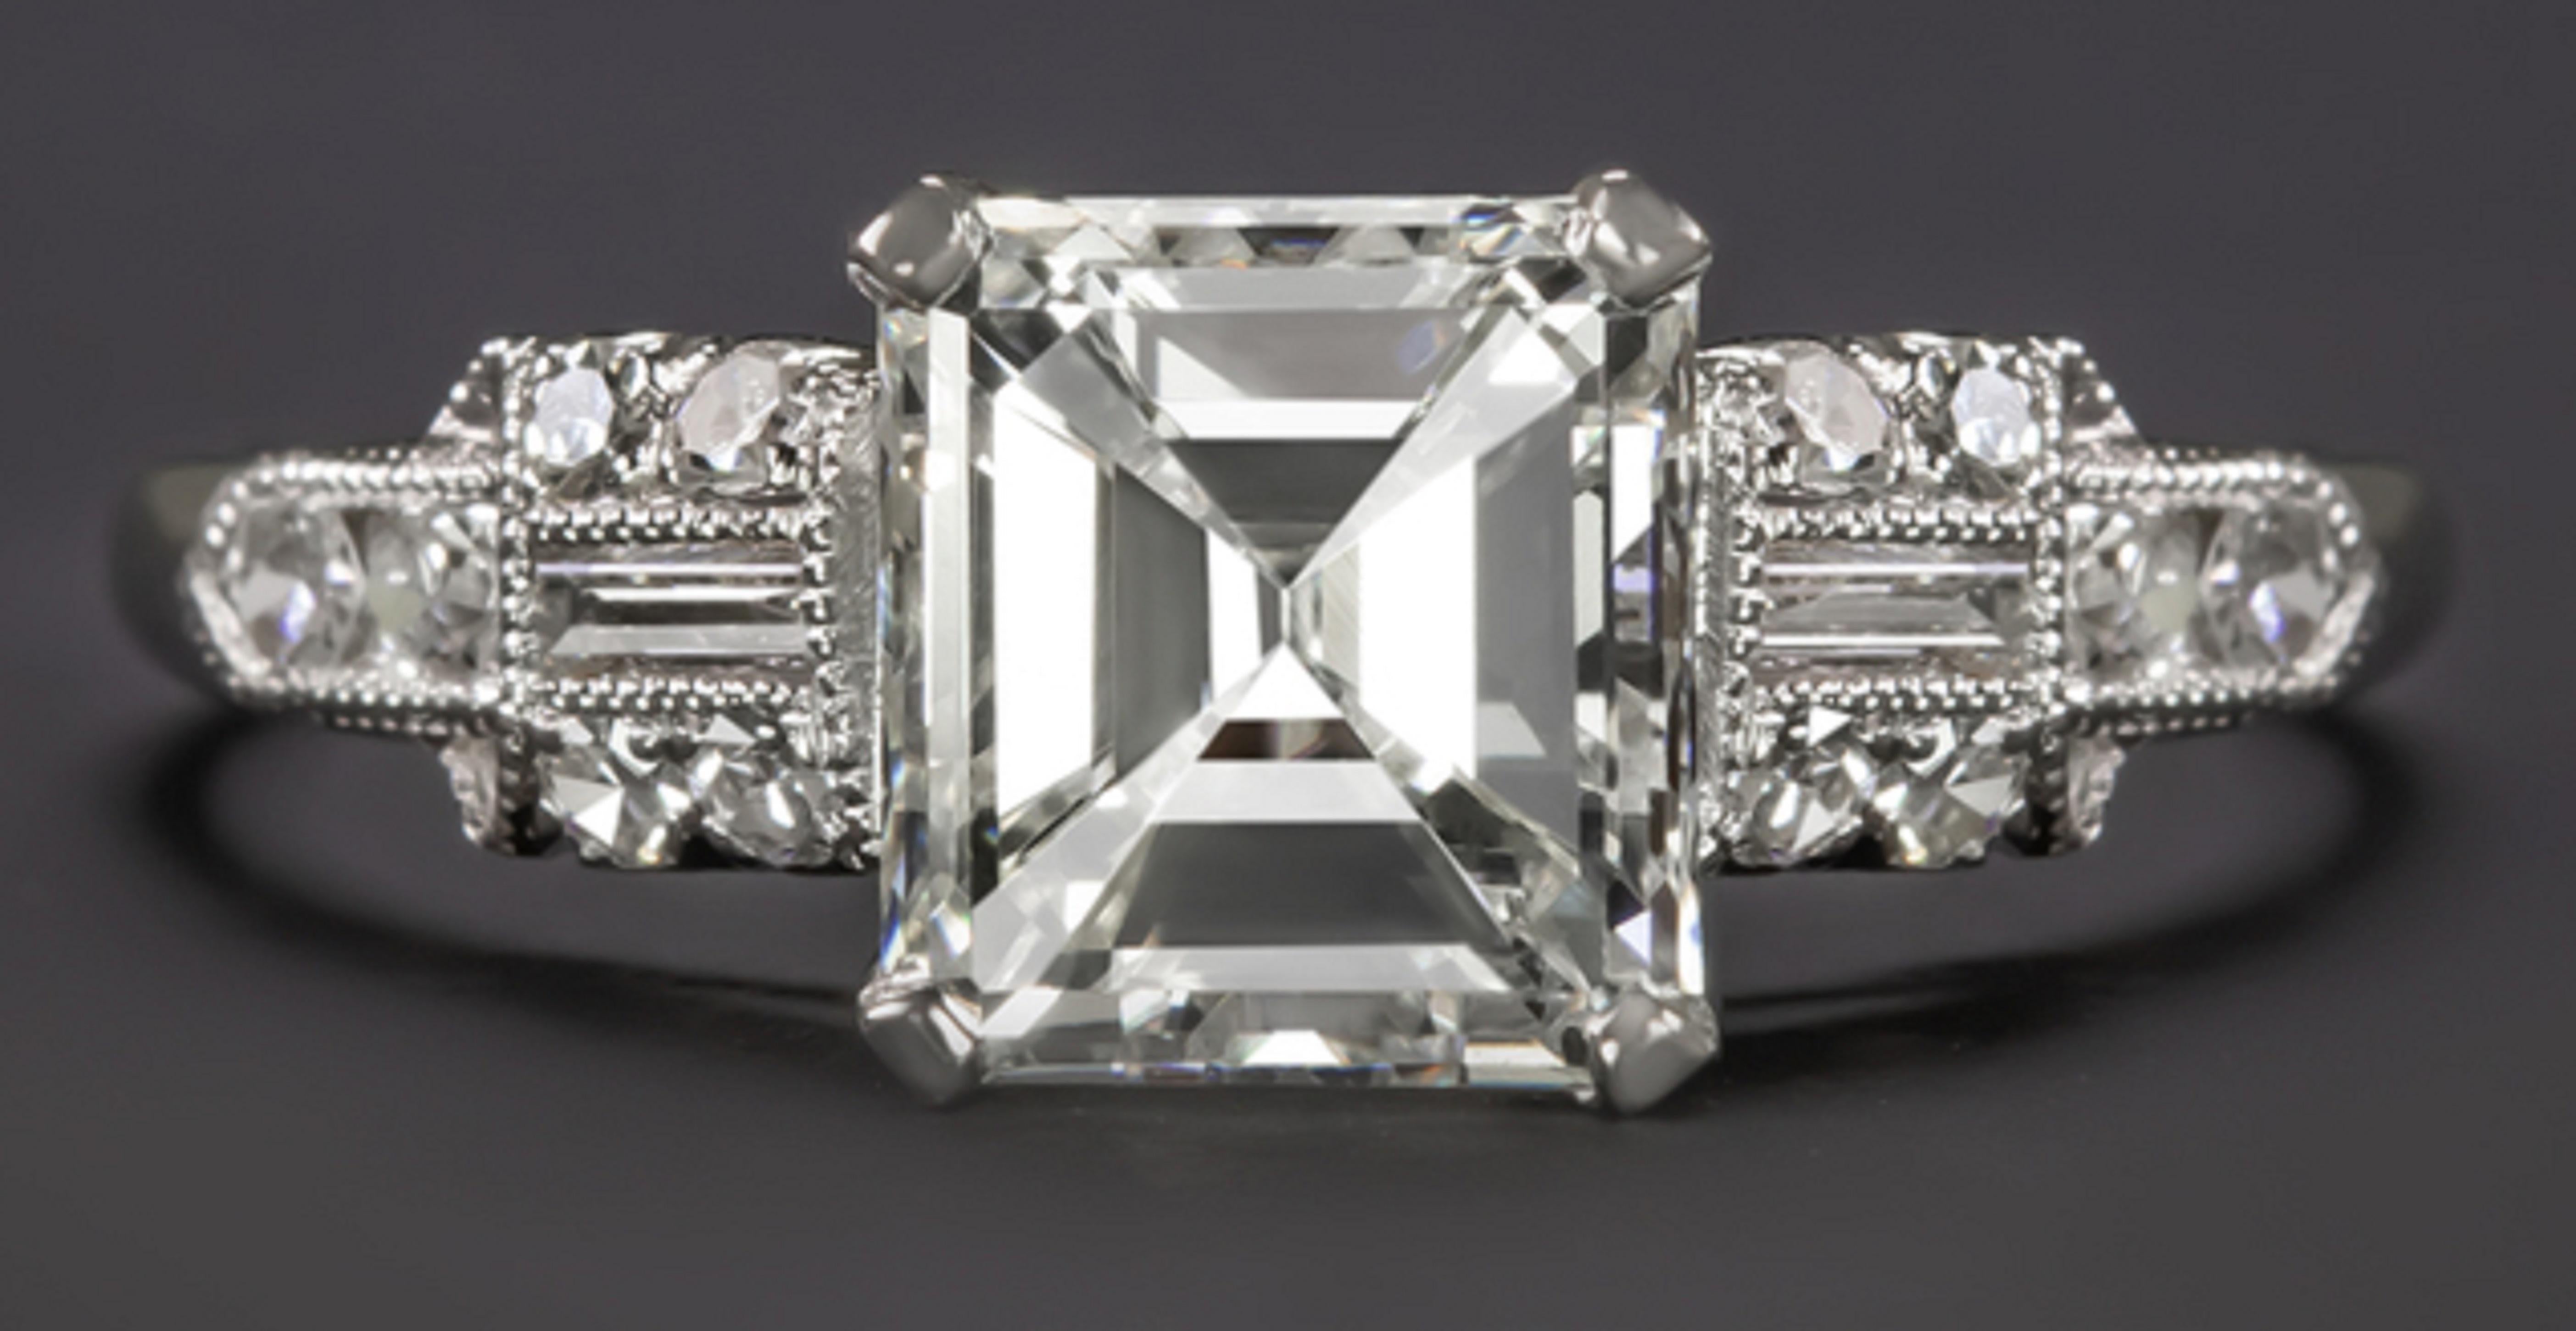 Cette magnifique bague de fiançailles de style vintage est ornée d'un vibrant diamant de taille émeraude certifié par la GIA, complété par une élégante monture à clous de diamant. La pierre principale est un diamant central de 1.30ct, très blanc et